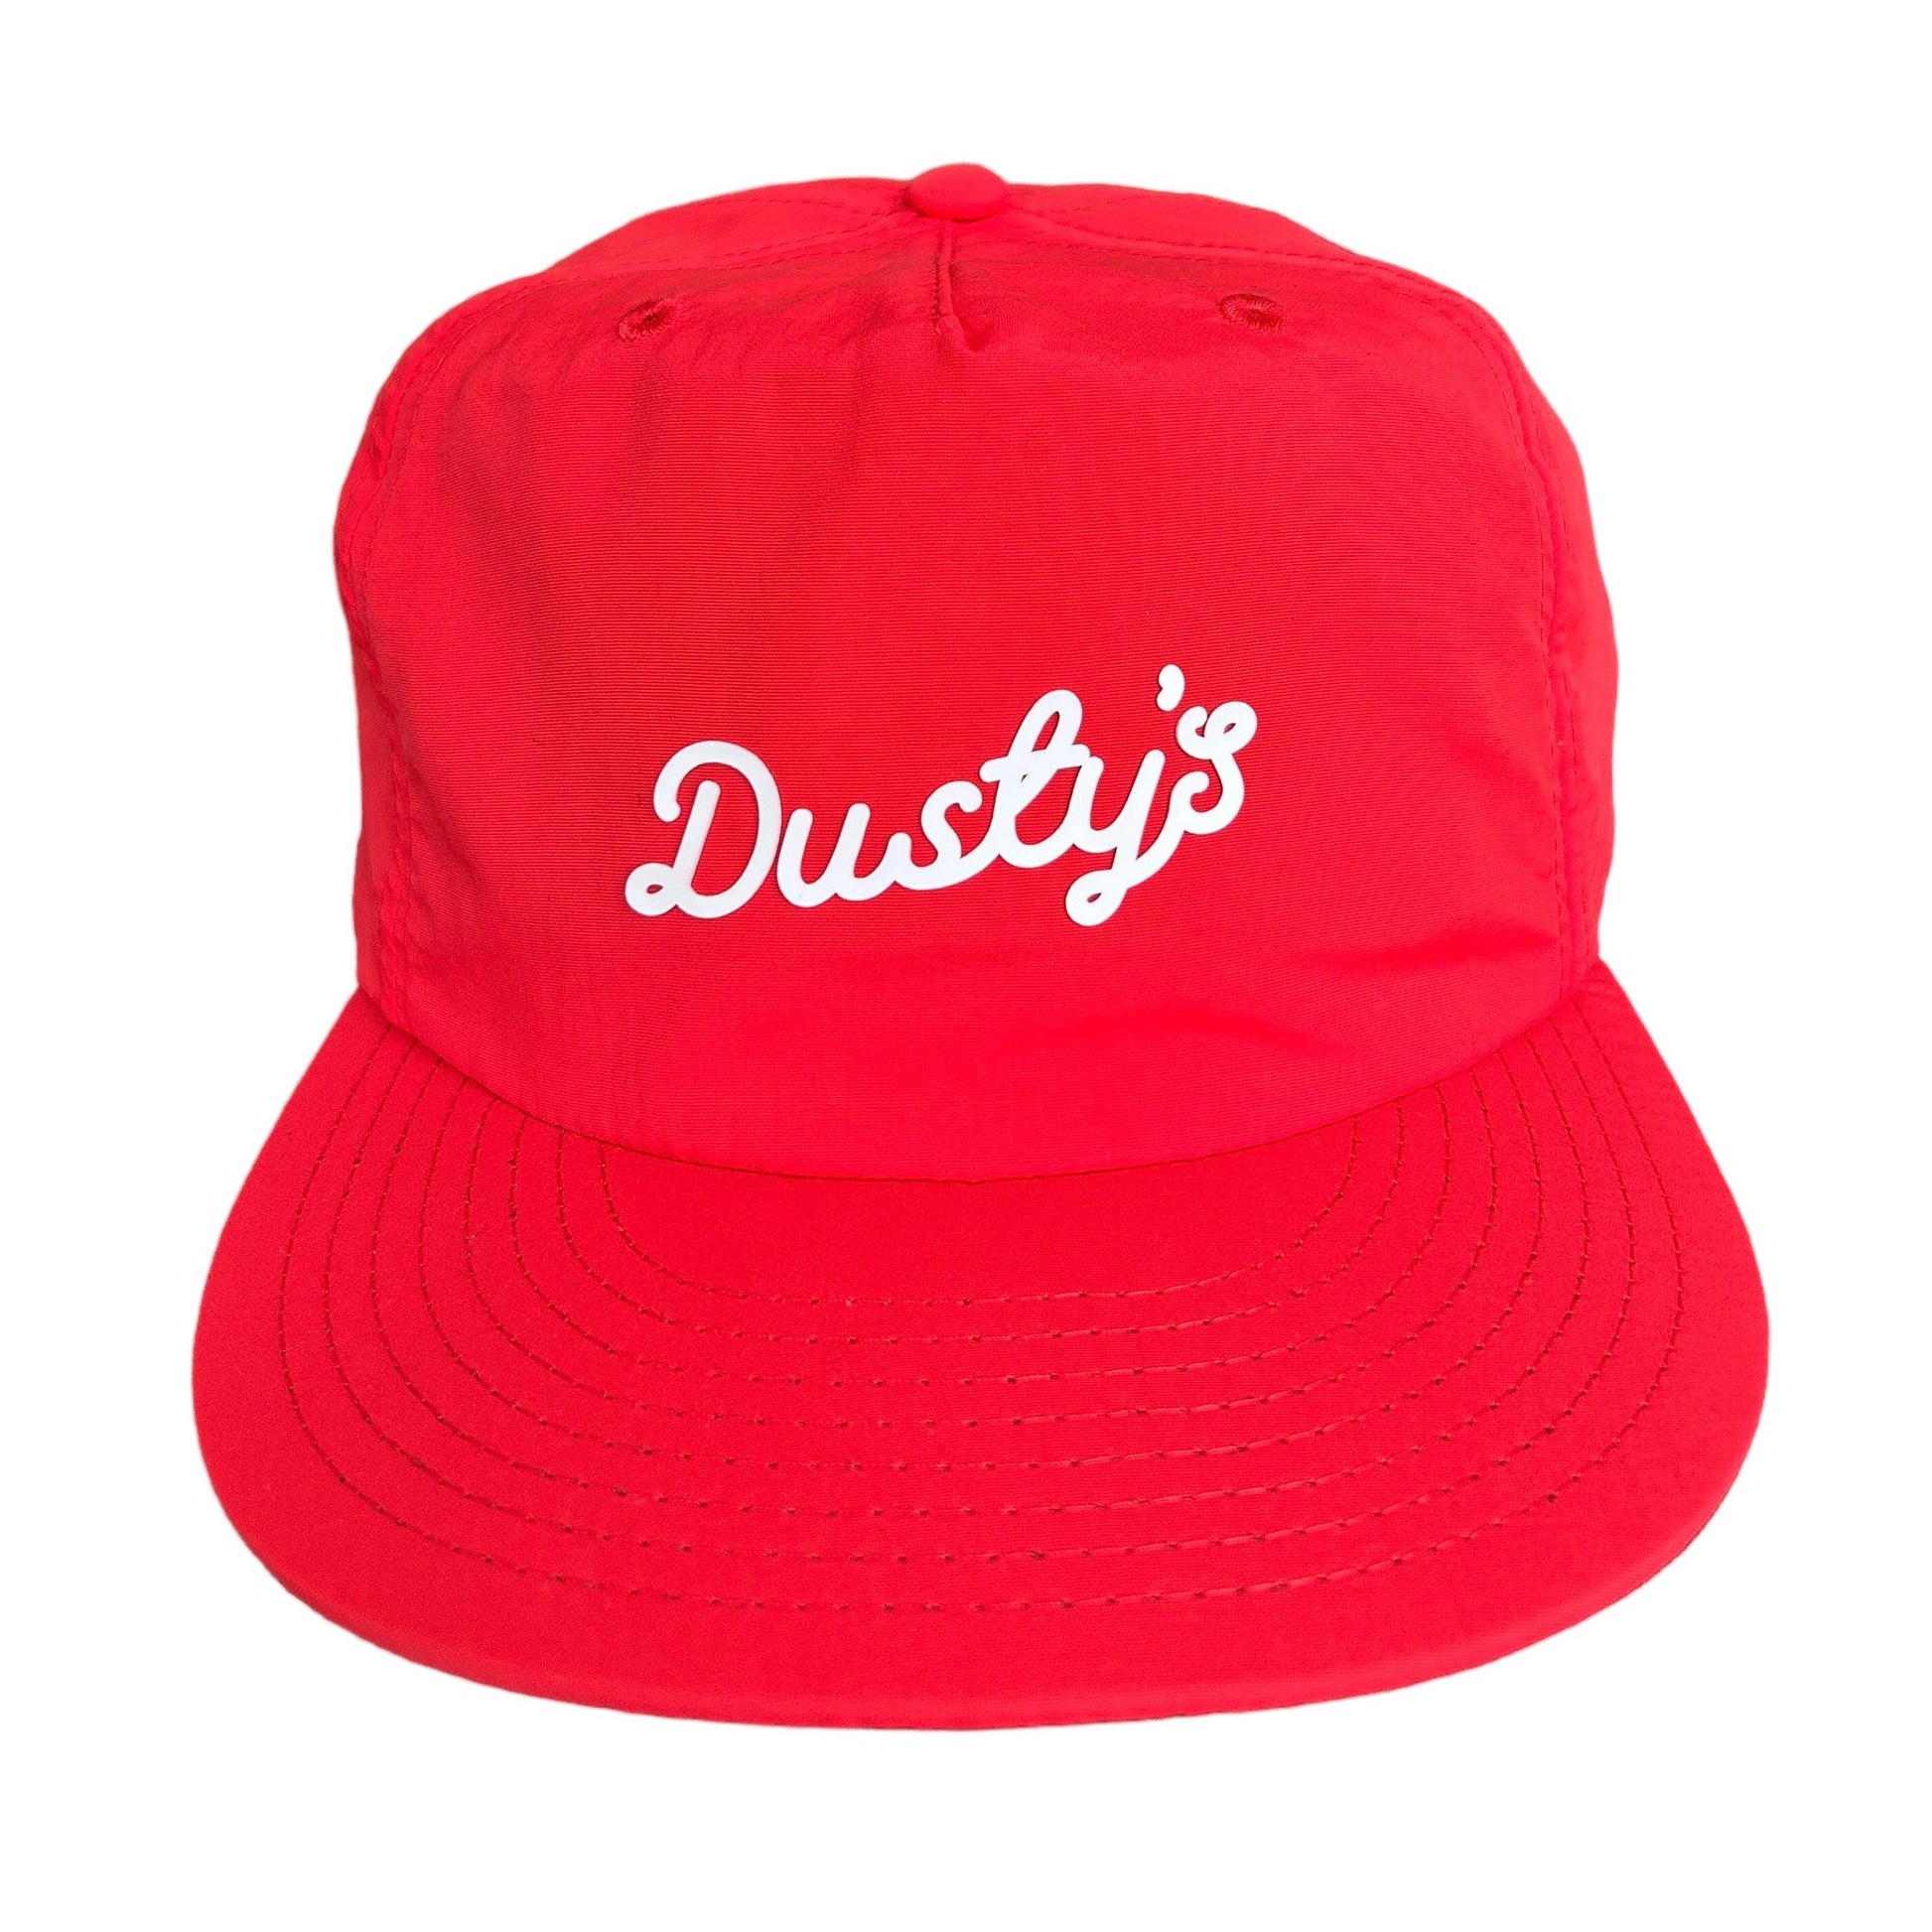 Dusty’s Signature Quick-dry outdoor Cap